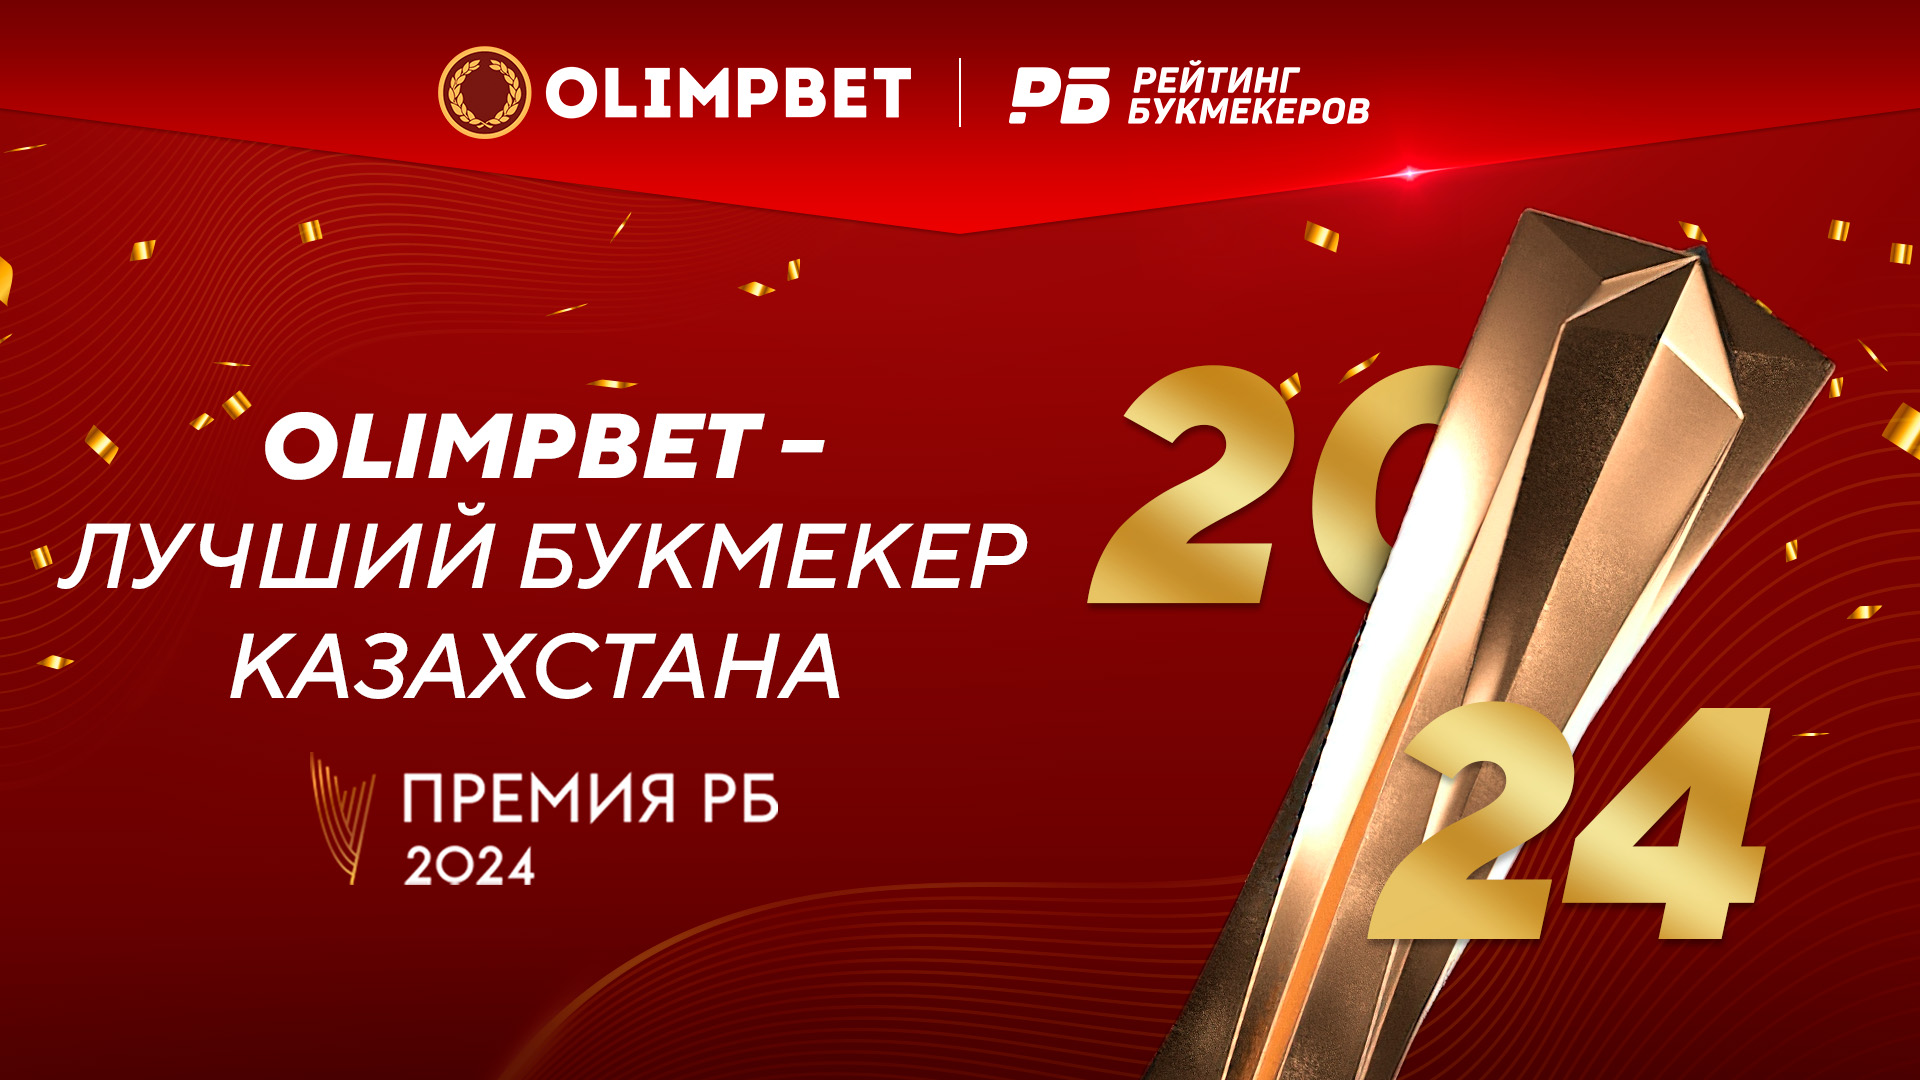 Olimpbet стал лучшим букмекером Казахстана на «Премии РБ 2024»